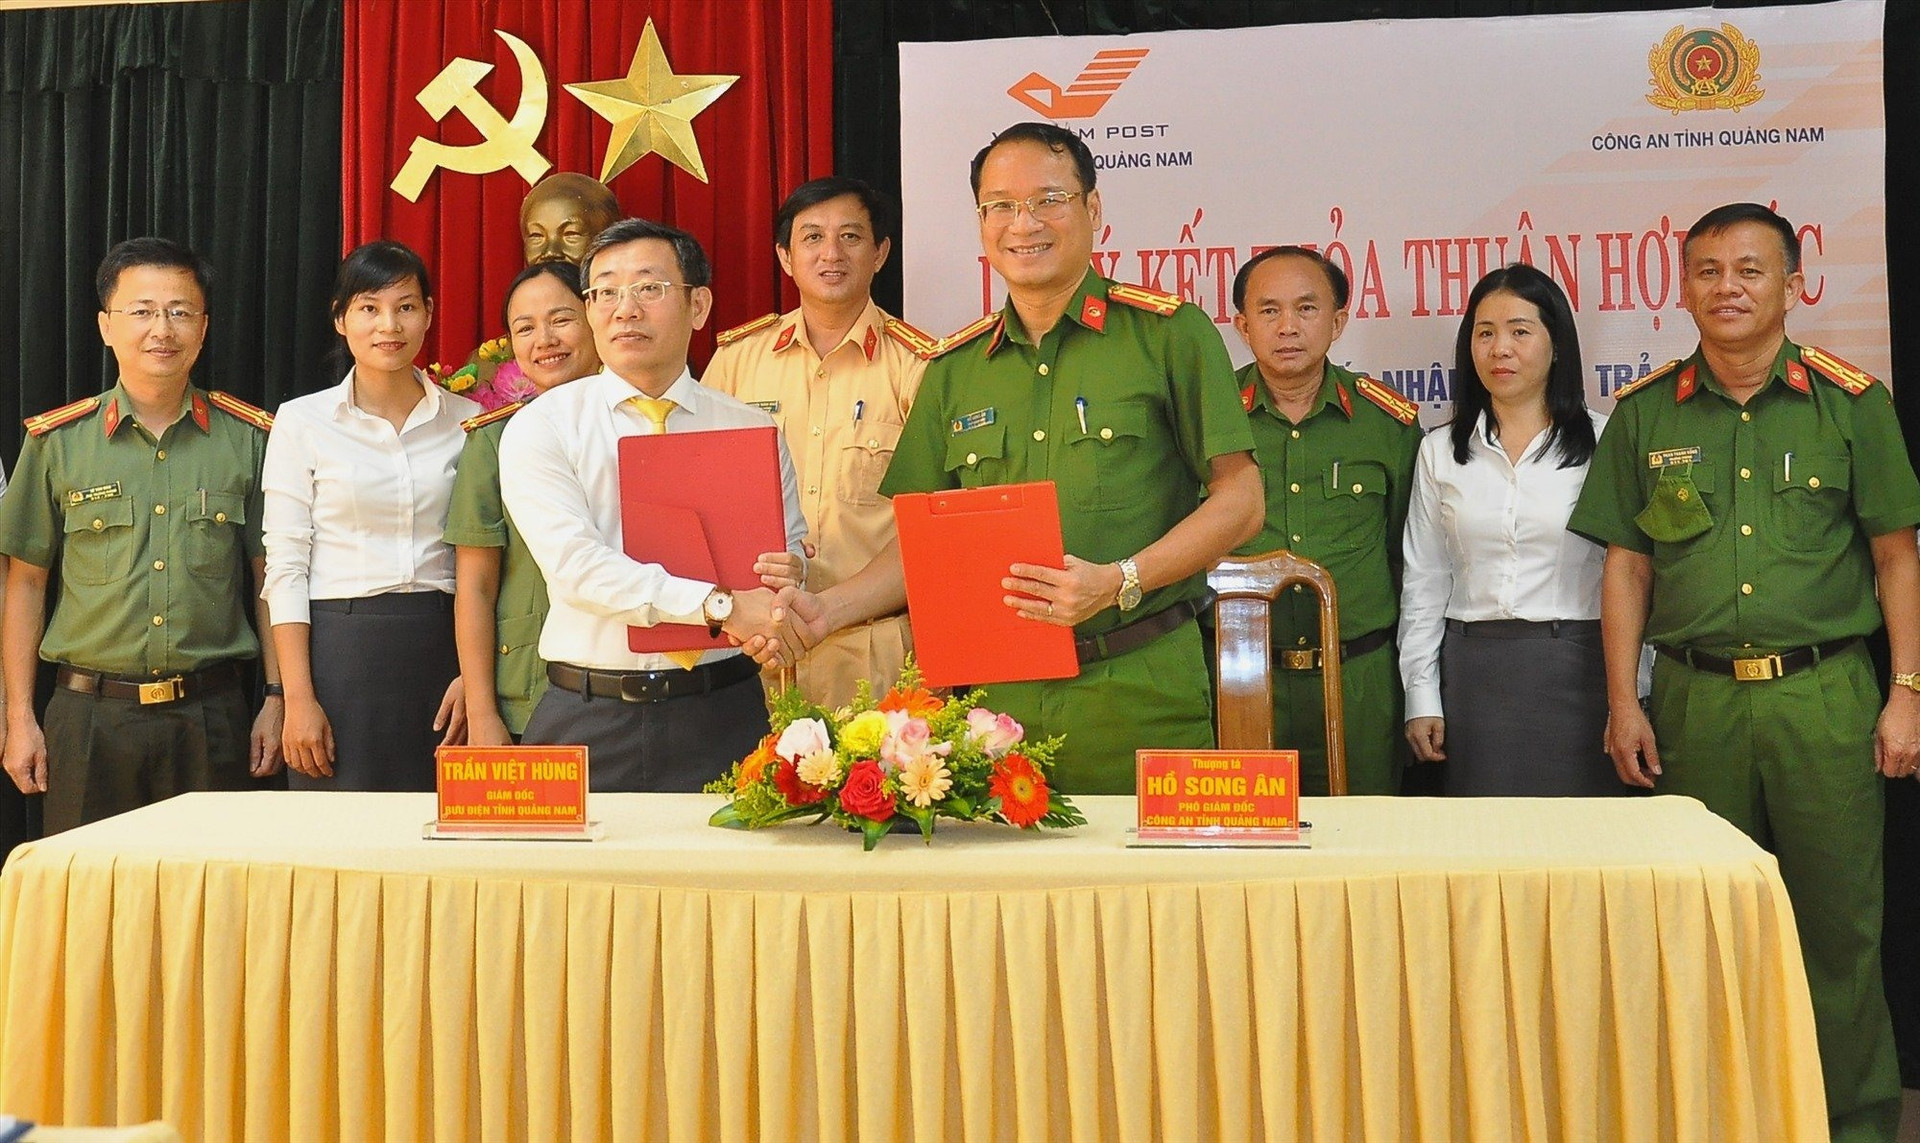 Bưu điện Quảng Nam và Công an Quảng Nam ký kết thỏa thuận hợp tác cung cấp dịch vụ tiếp nhận hồ sơ, trả kết quả giải quyết thủ tục hành chính qua hệ thống bưu điện.